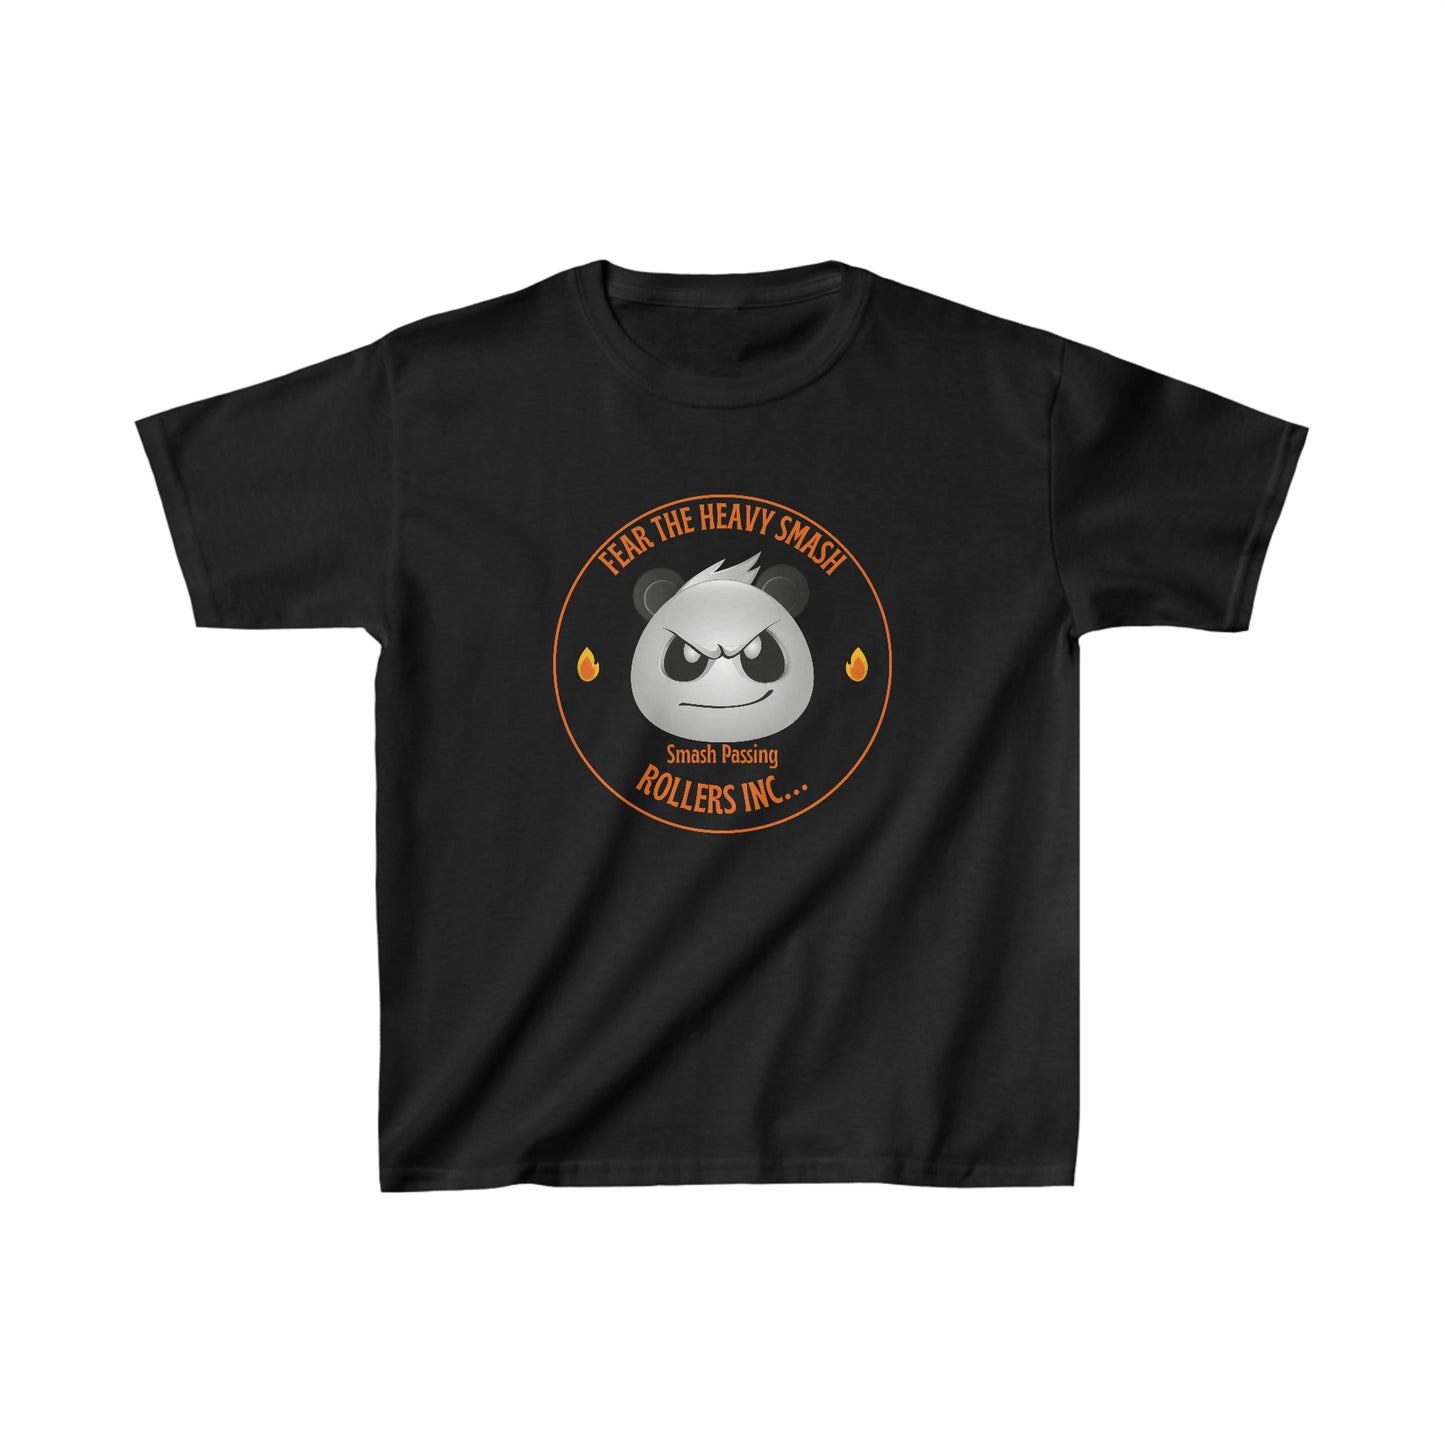 Panda Smash Passing Youth Jiu Jitsu T-Shirt and Jiu Jitsu Apparel